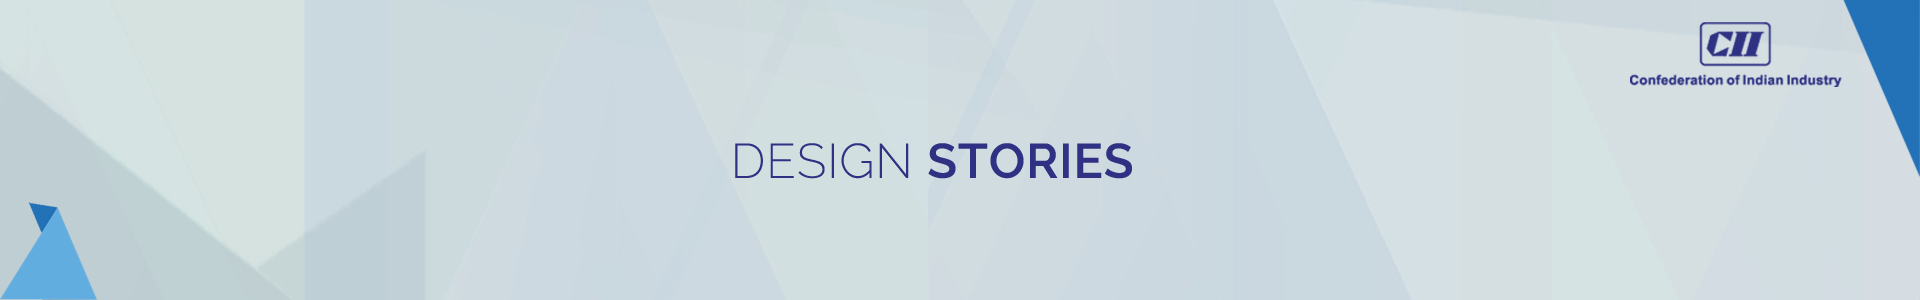 design-stories-banner